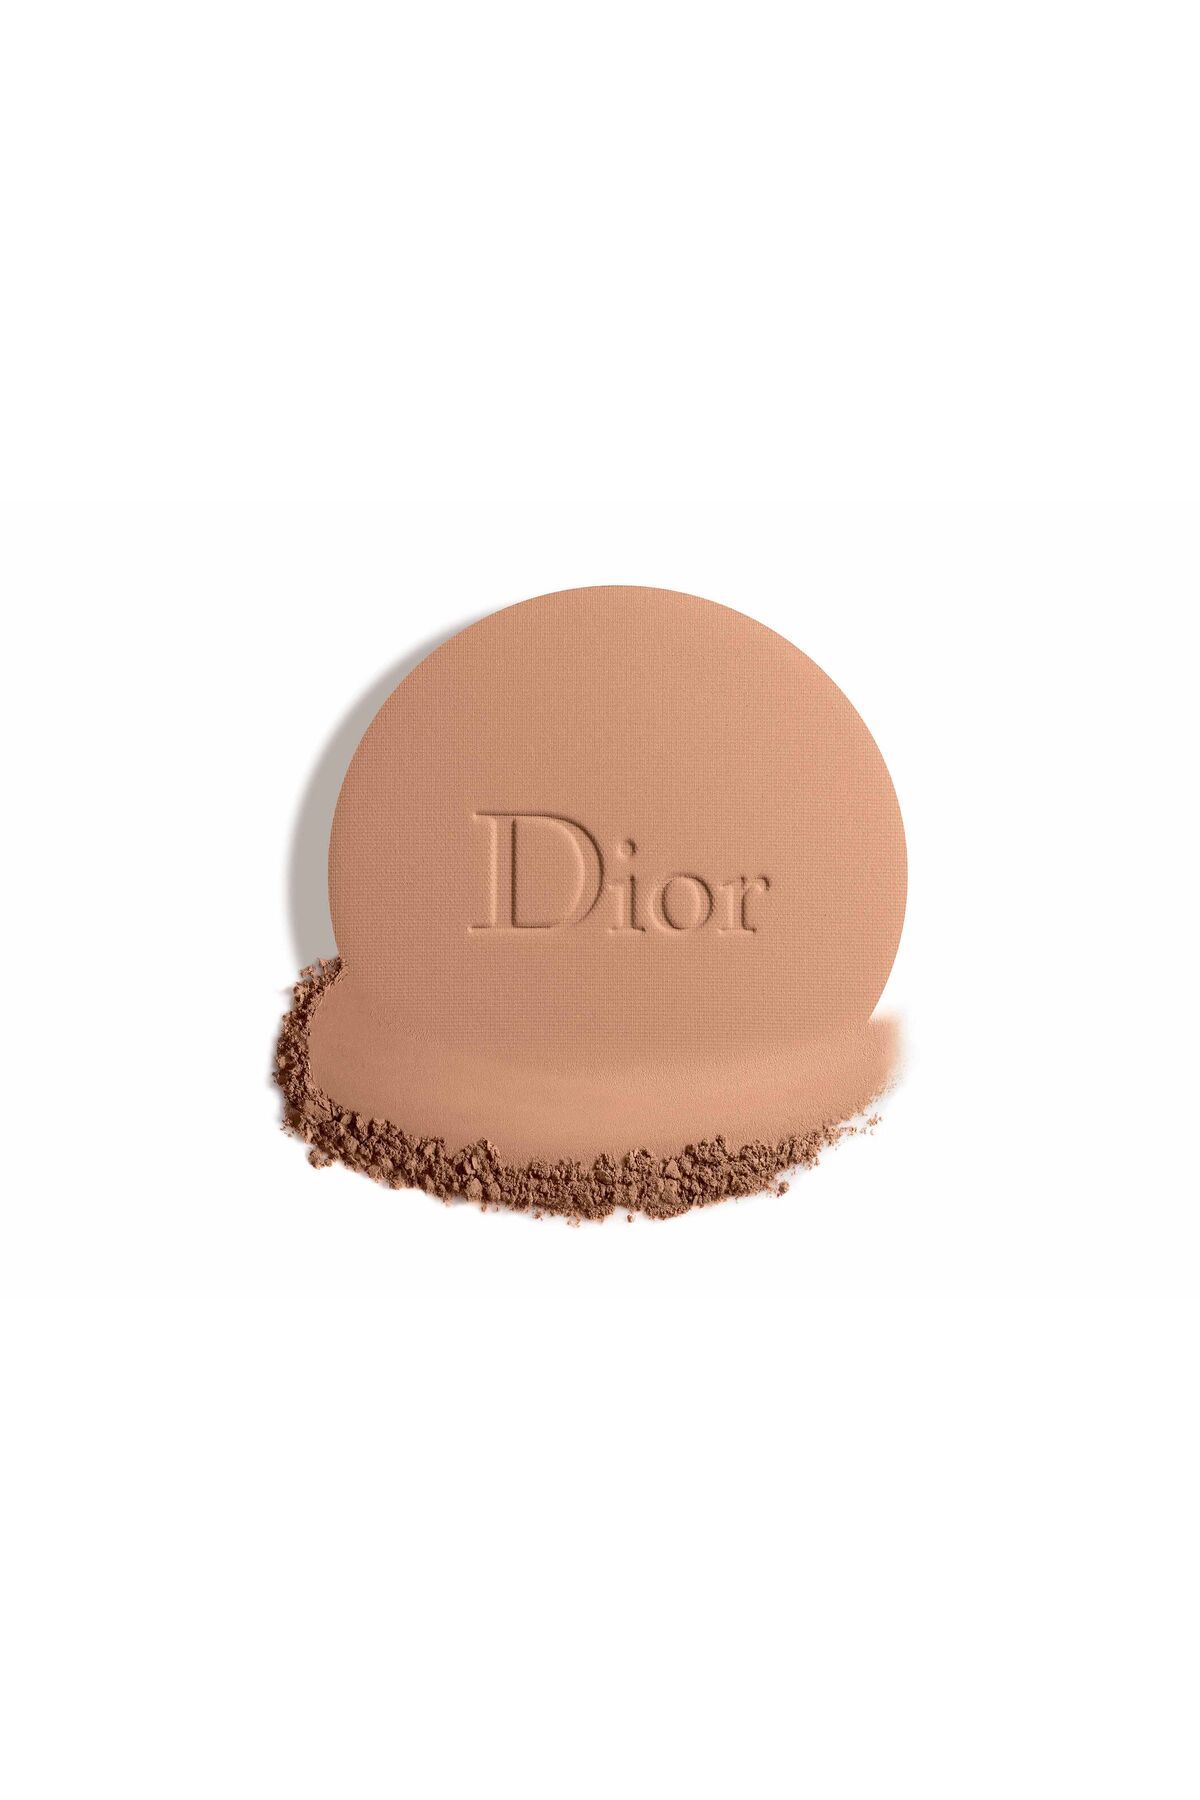 Dior پودر برنز طبیعی برای ماندگاری طولانی و نگهداری رطوبت گردویی شفاف